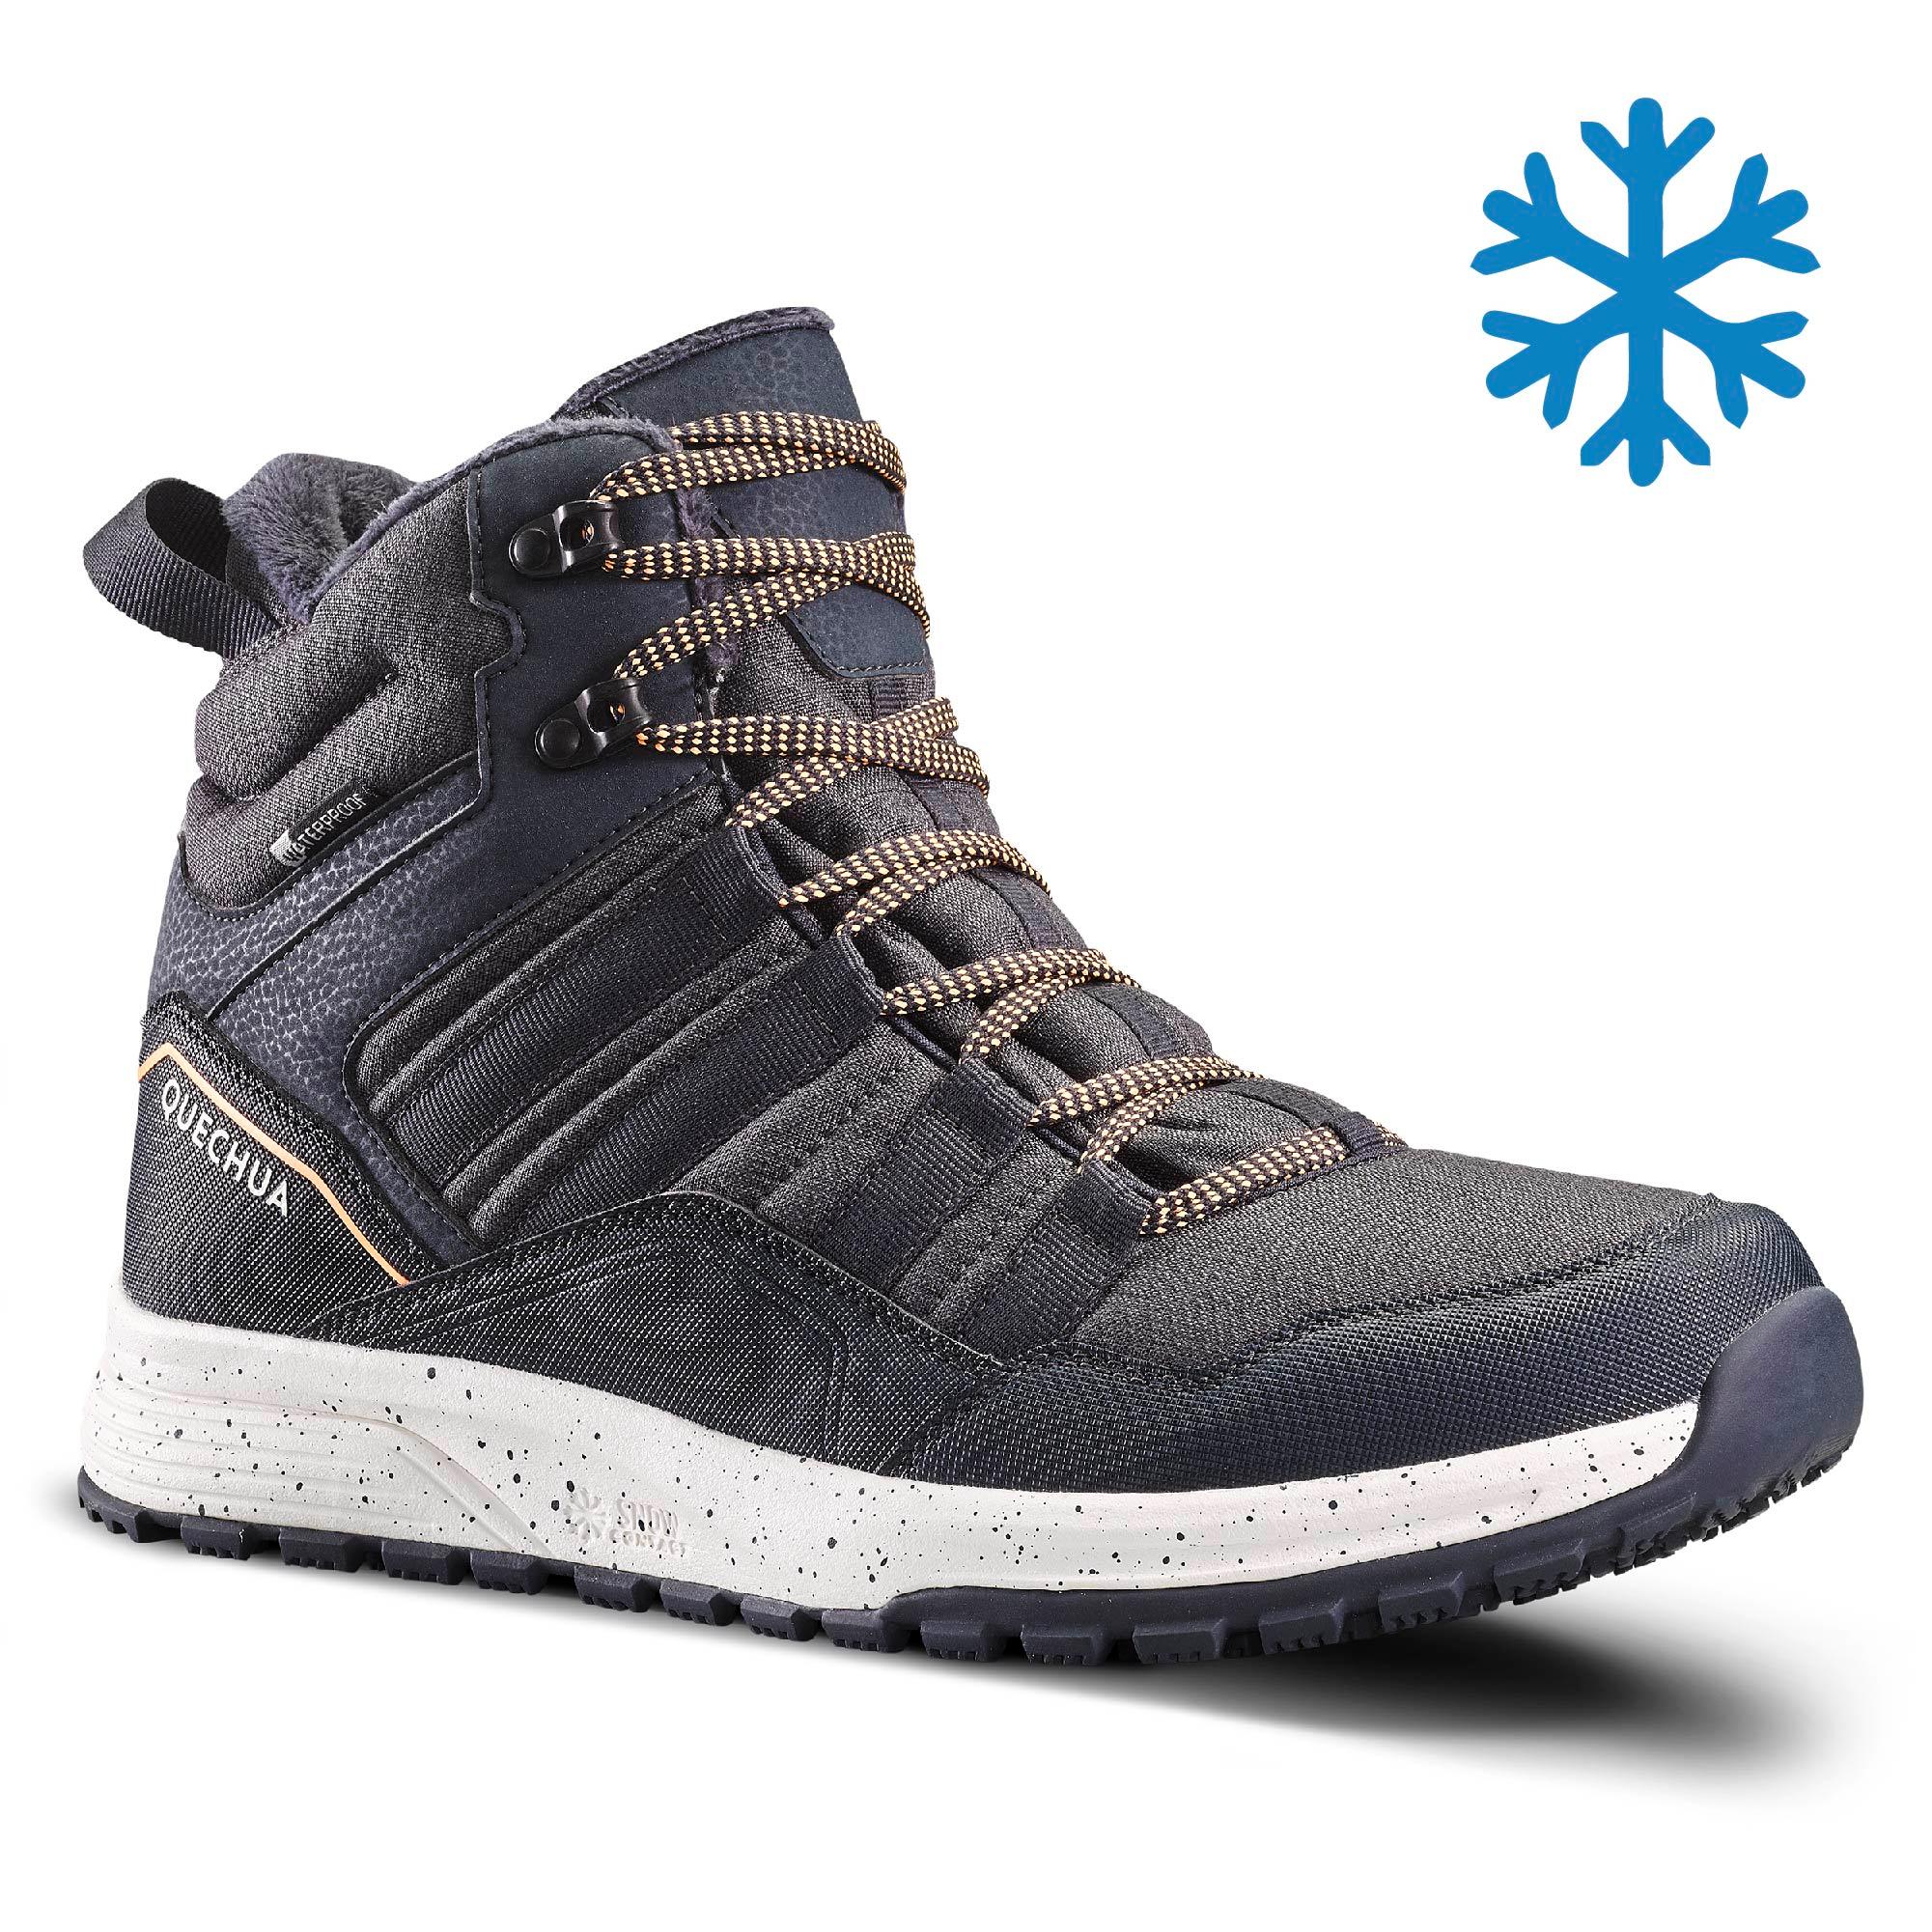 Men's Snow Shoes WARM \u0026 WATERRPROOF 